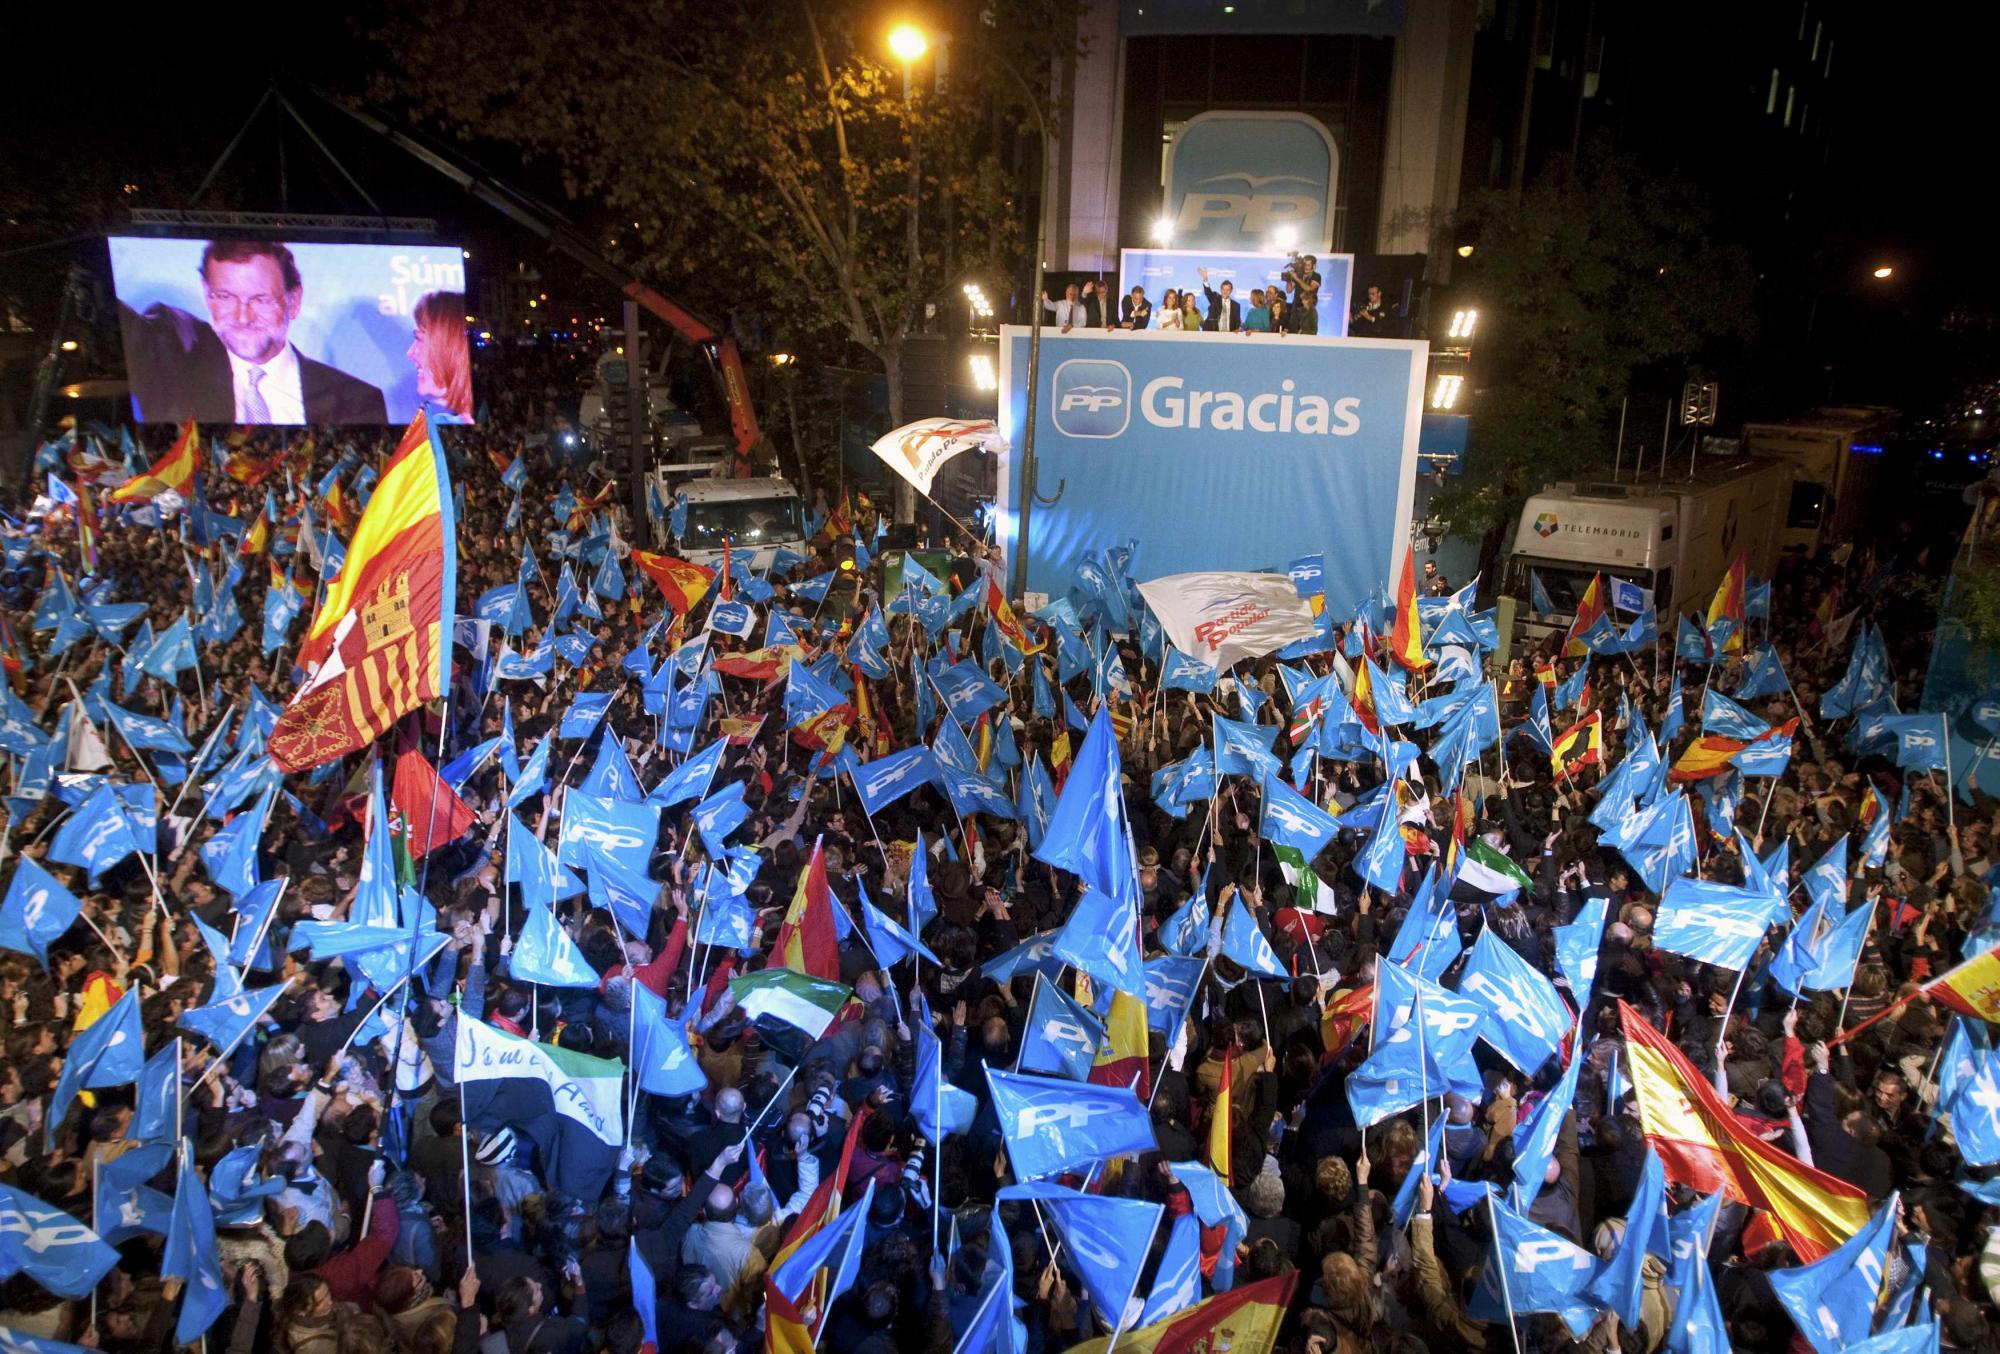 债务危机迫使西班牙提前大选 新当选首相坦言